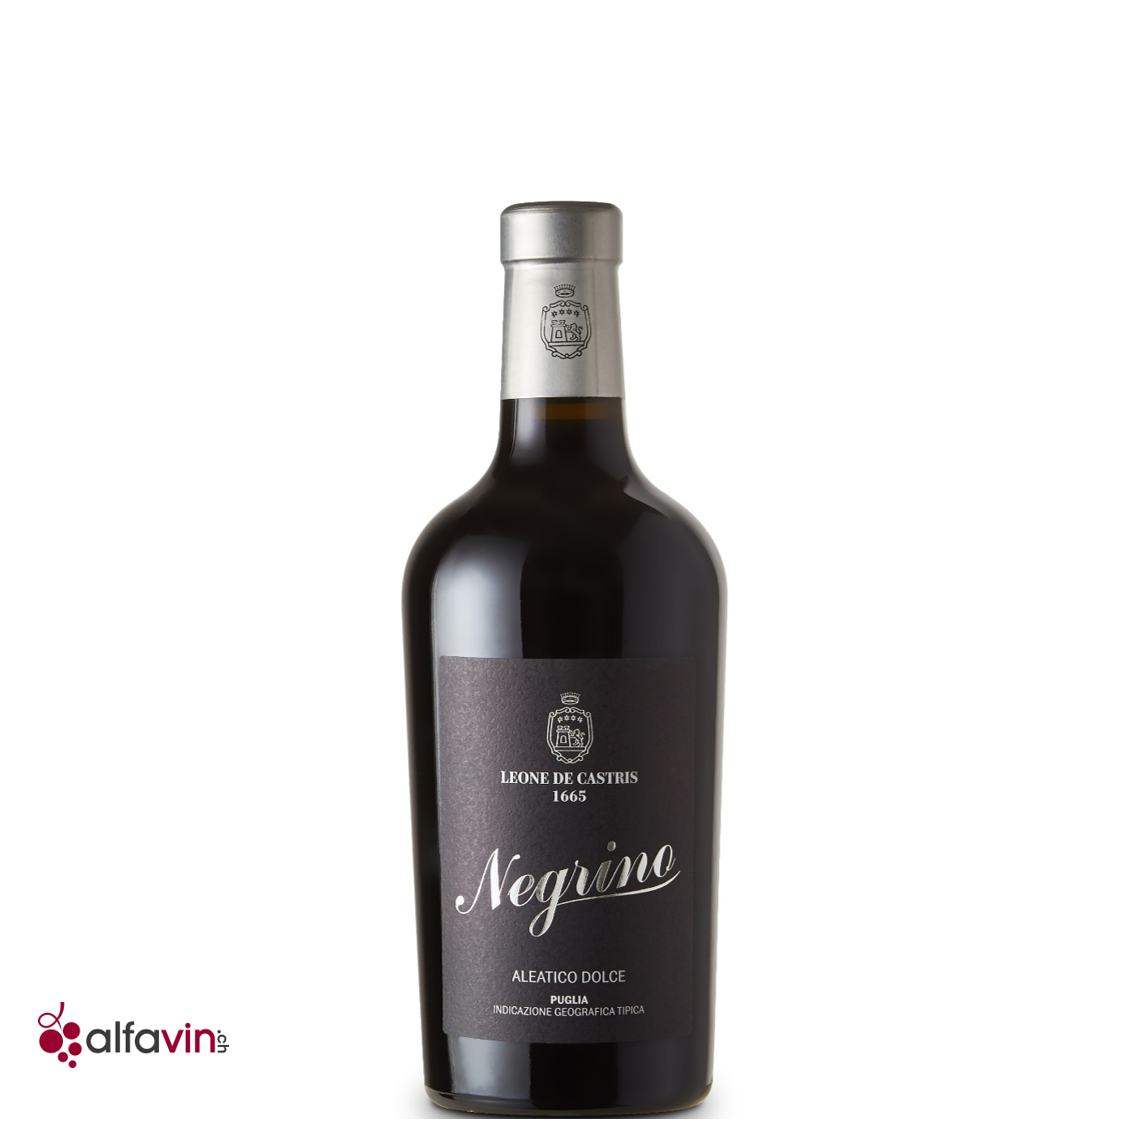 Negrino 2018 - Süsser Italien Rotwein aus